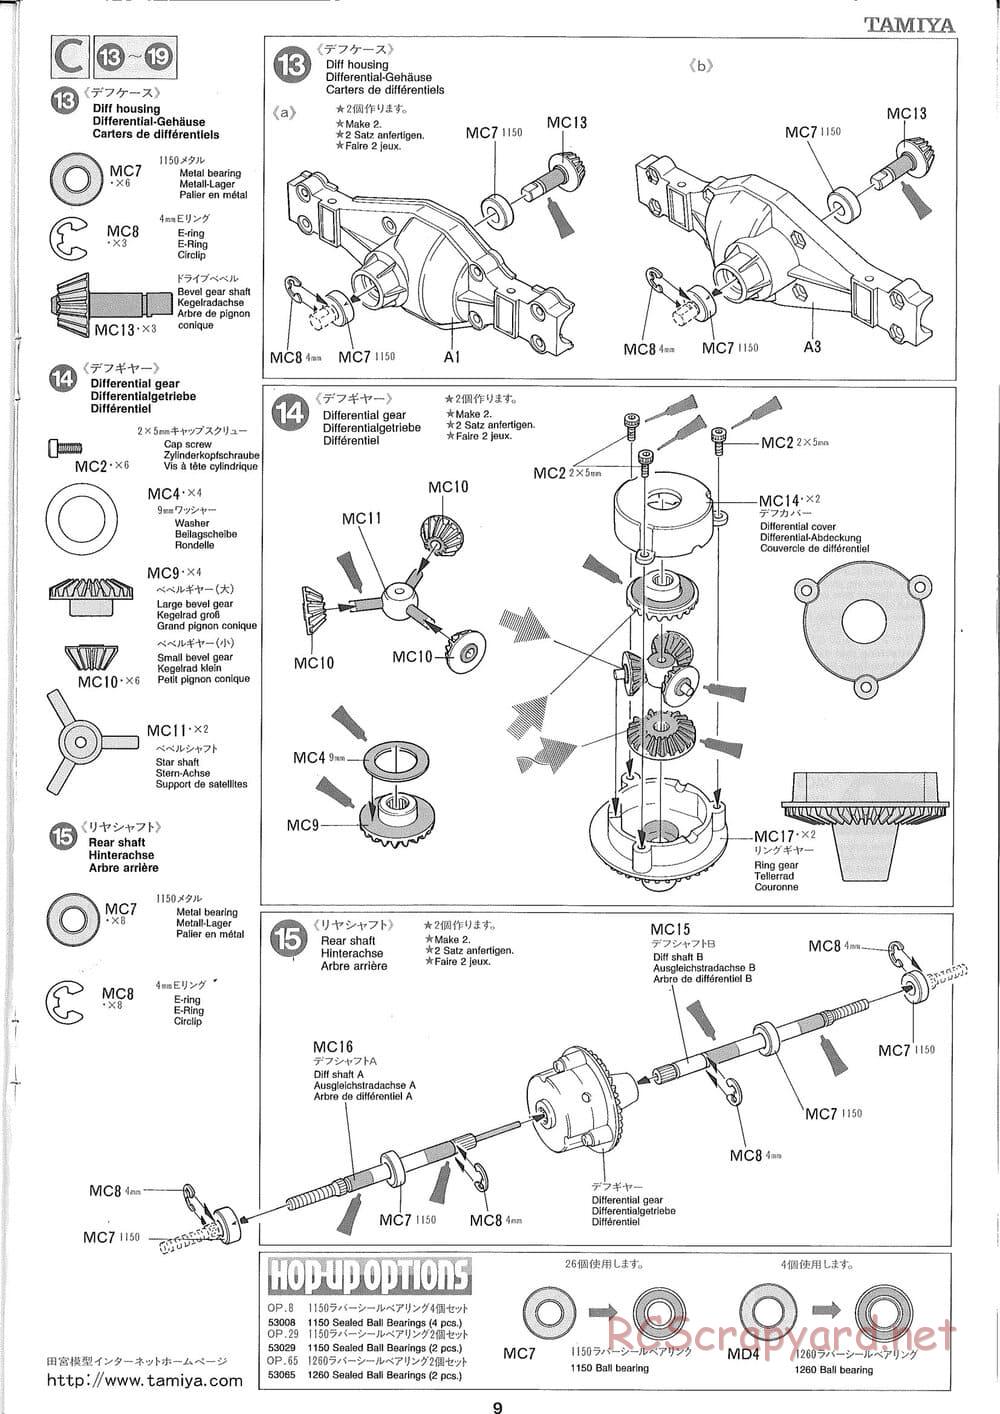 Tamiya - Ford Aeromax - Manual - Page 9